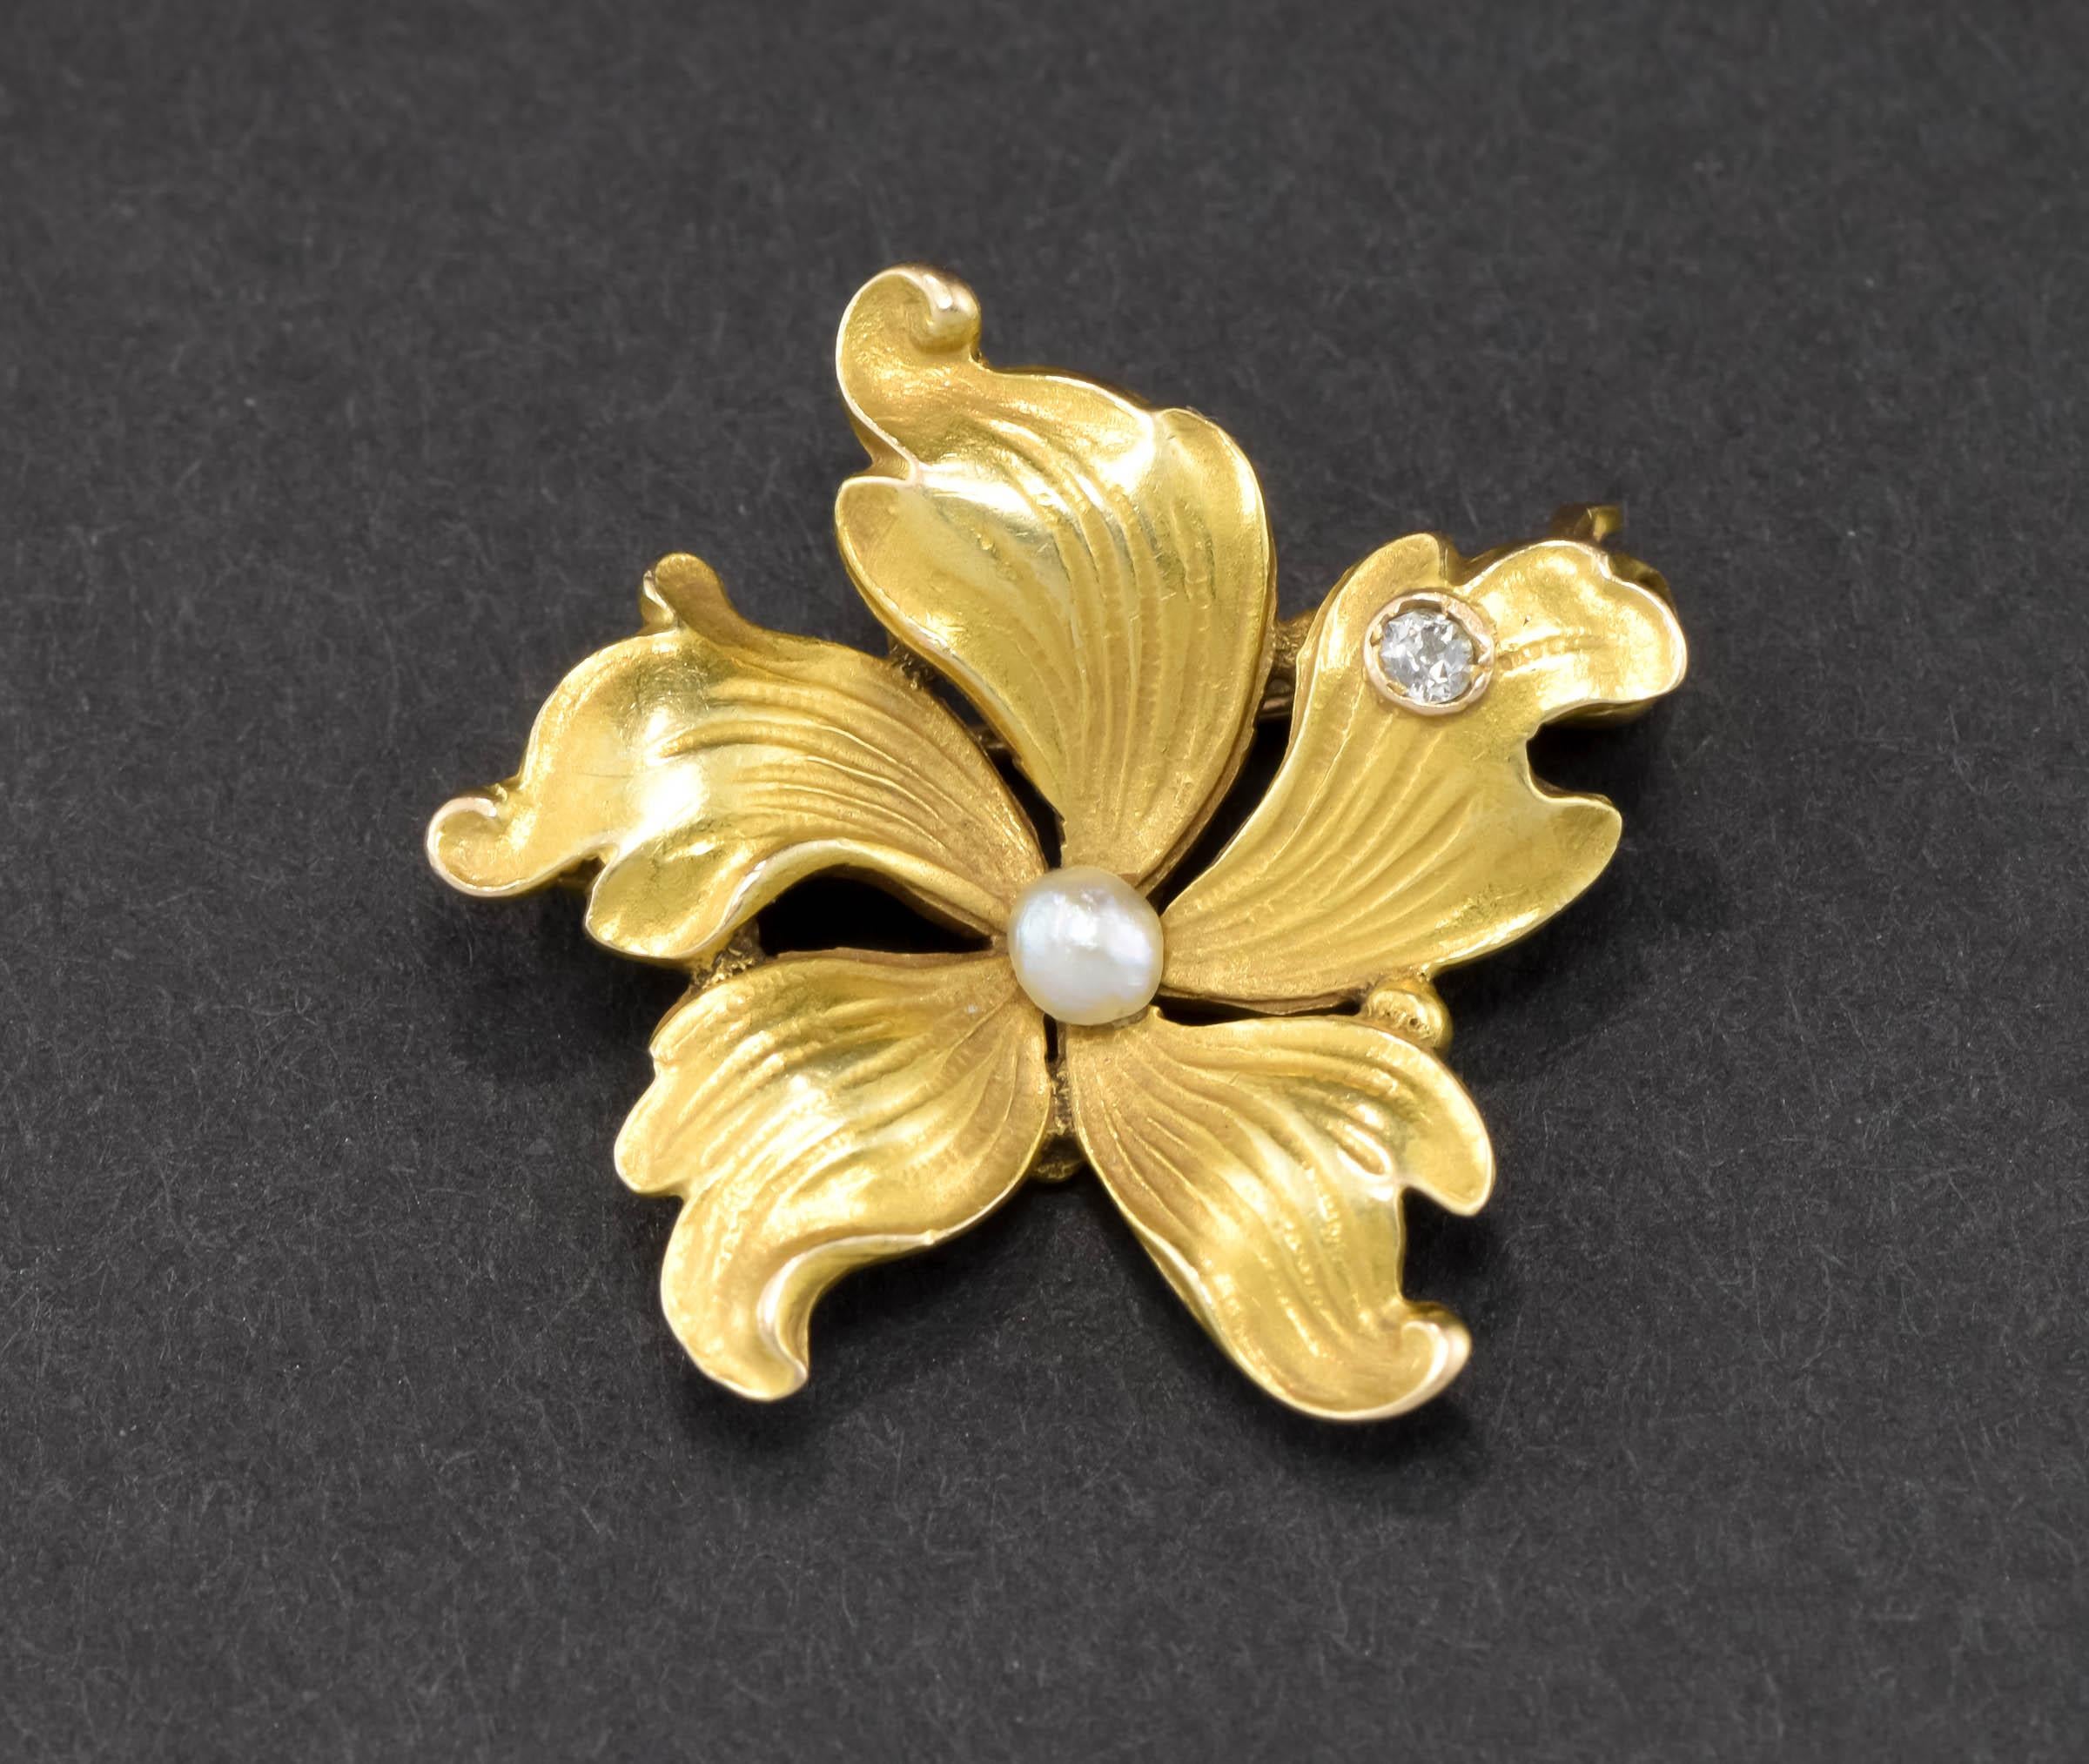 Angeboten wird eine schöne, zierliche und zierliche Art Nouveau Periode Gold Blumen Brosche Pin in schönen ursprünglichen Zustand.

Das fein aus 14-karätigem Gelbgold gefertigte Stück hat den größten Teil seiner ursprünglichen, geblümten Oberfläche